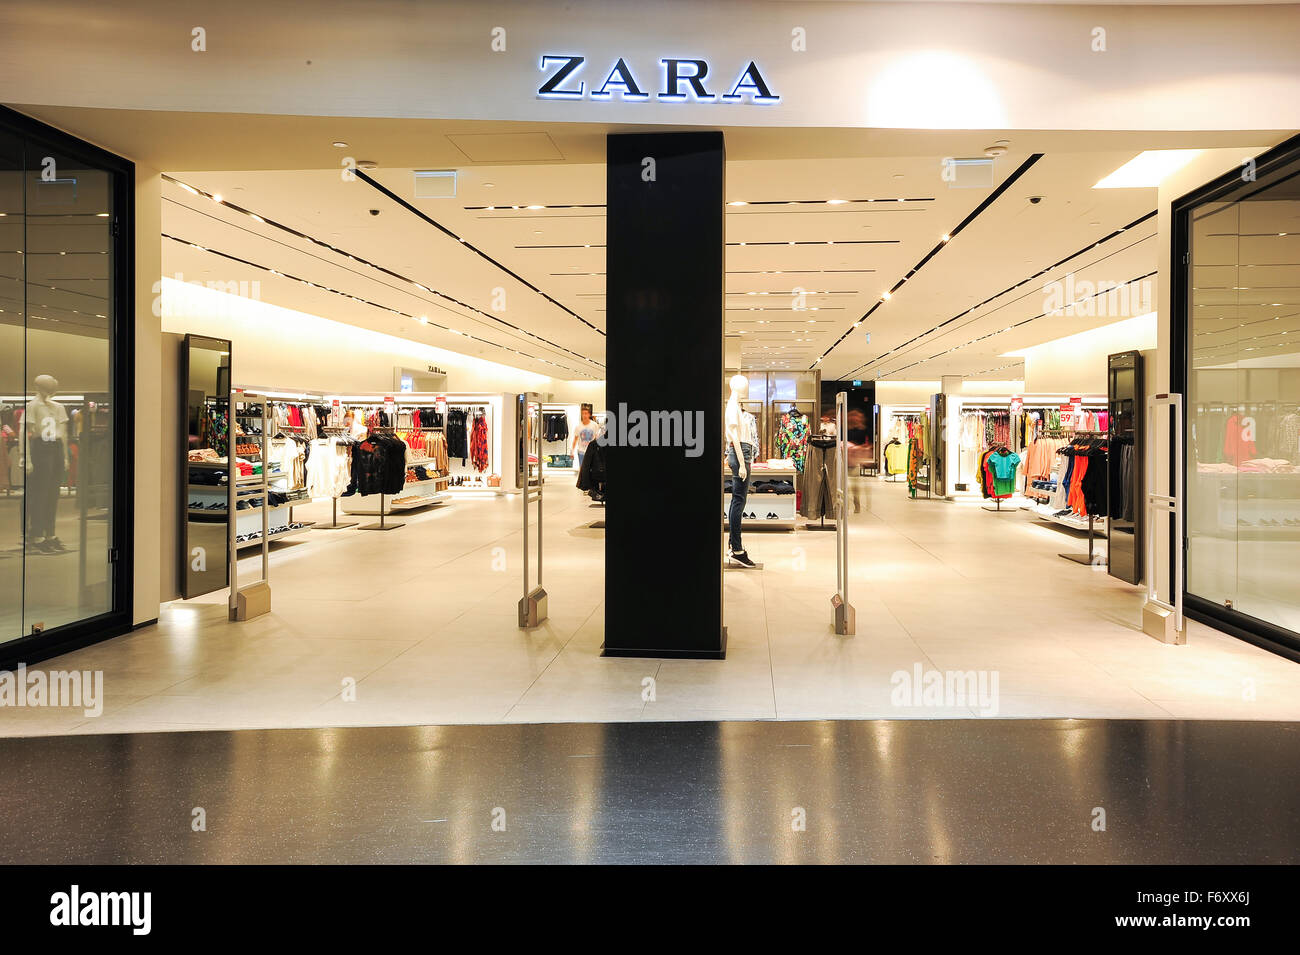 Zara inside interior immagini e fotografie stock ad alta risoluzione - Alamy